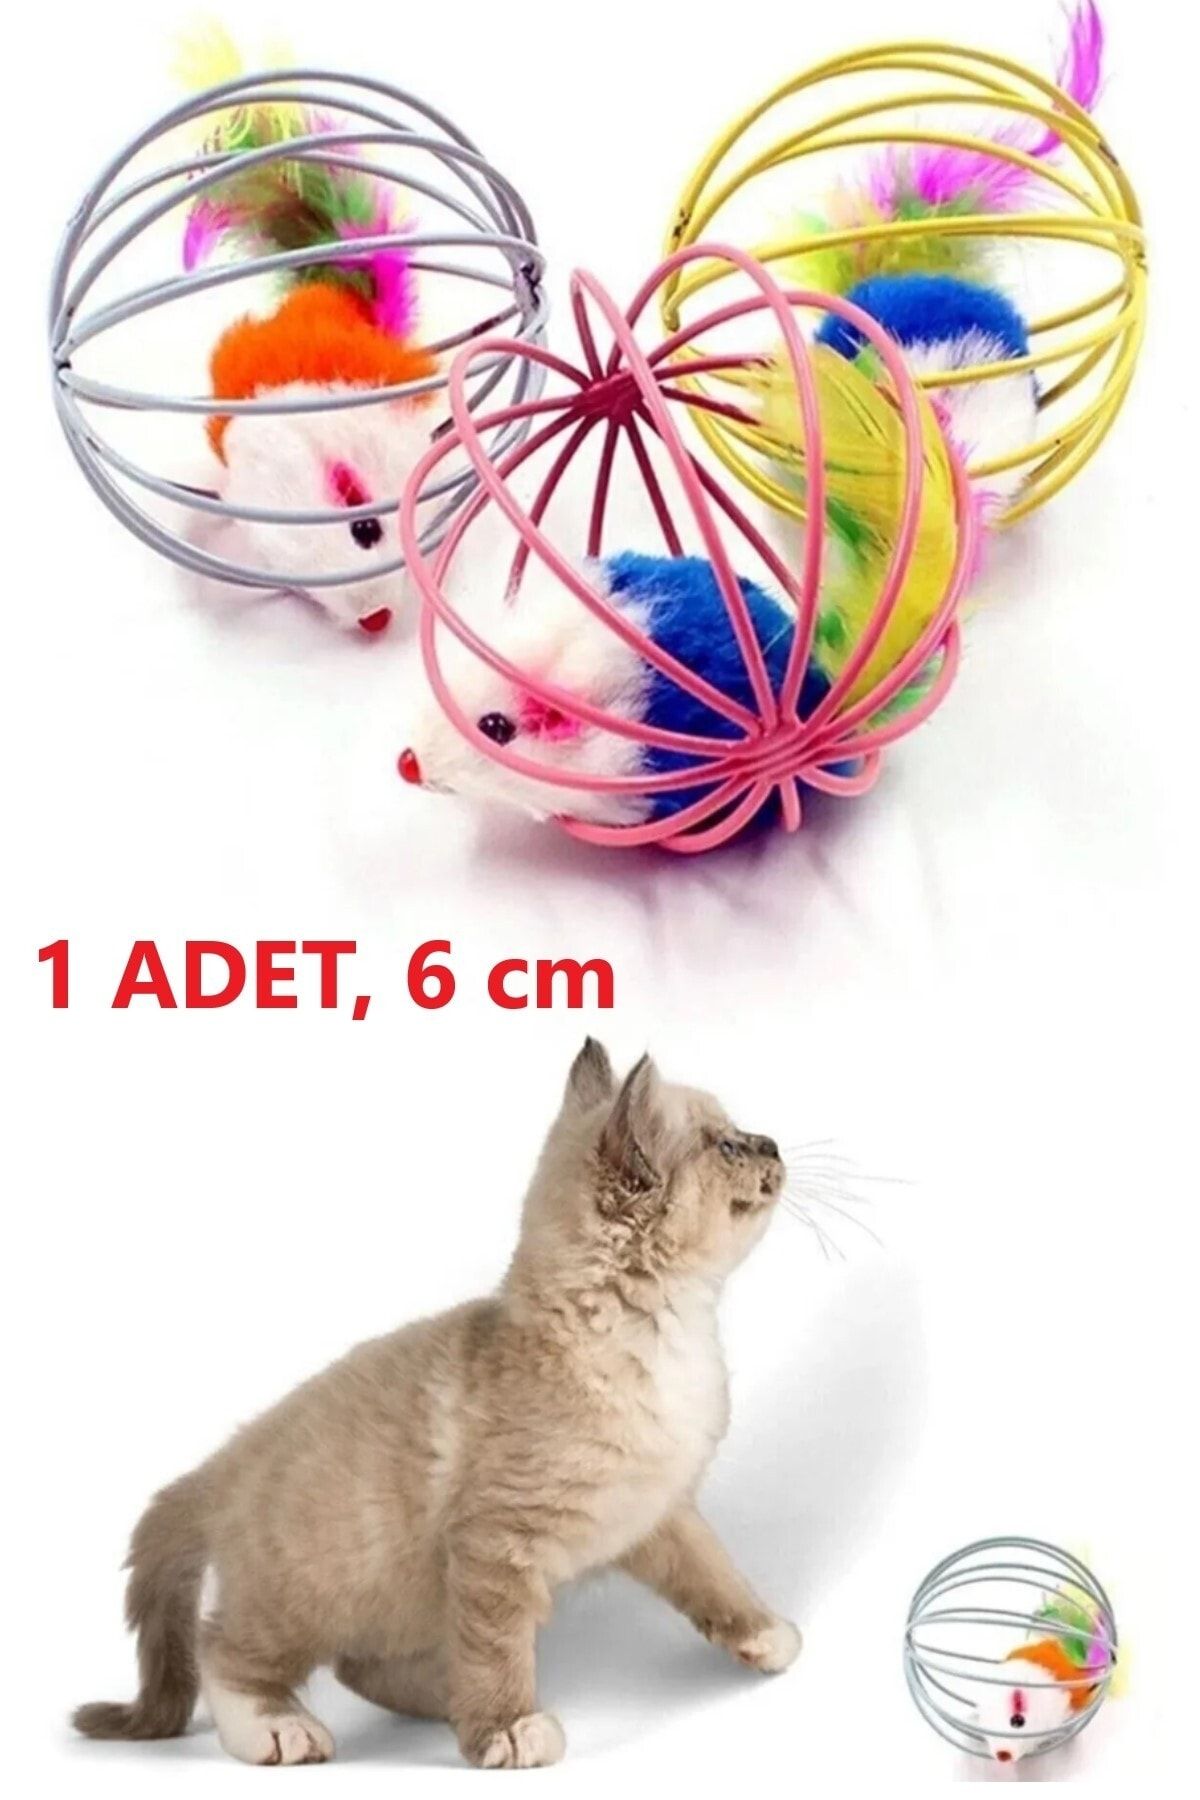 optana 6 Cm Renkli Metal Kafesli Peluş Fareli Kedi Köpek Oyuncağı Oyun Topu Kedi Oyun Faresi Kedi Eğitim